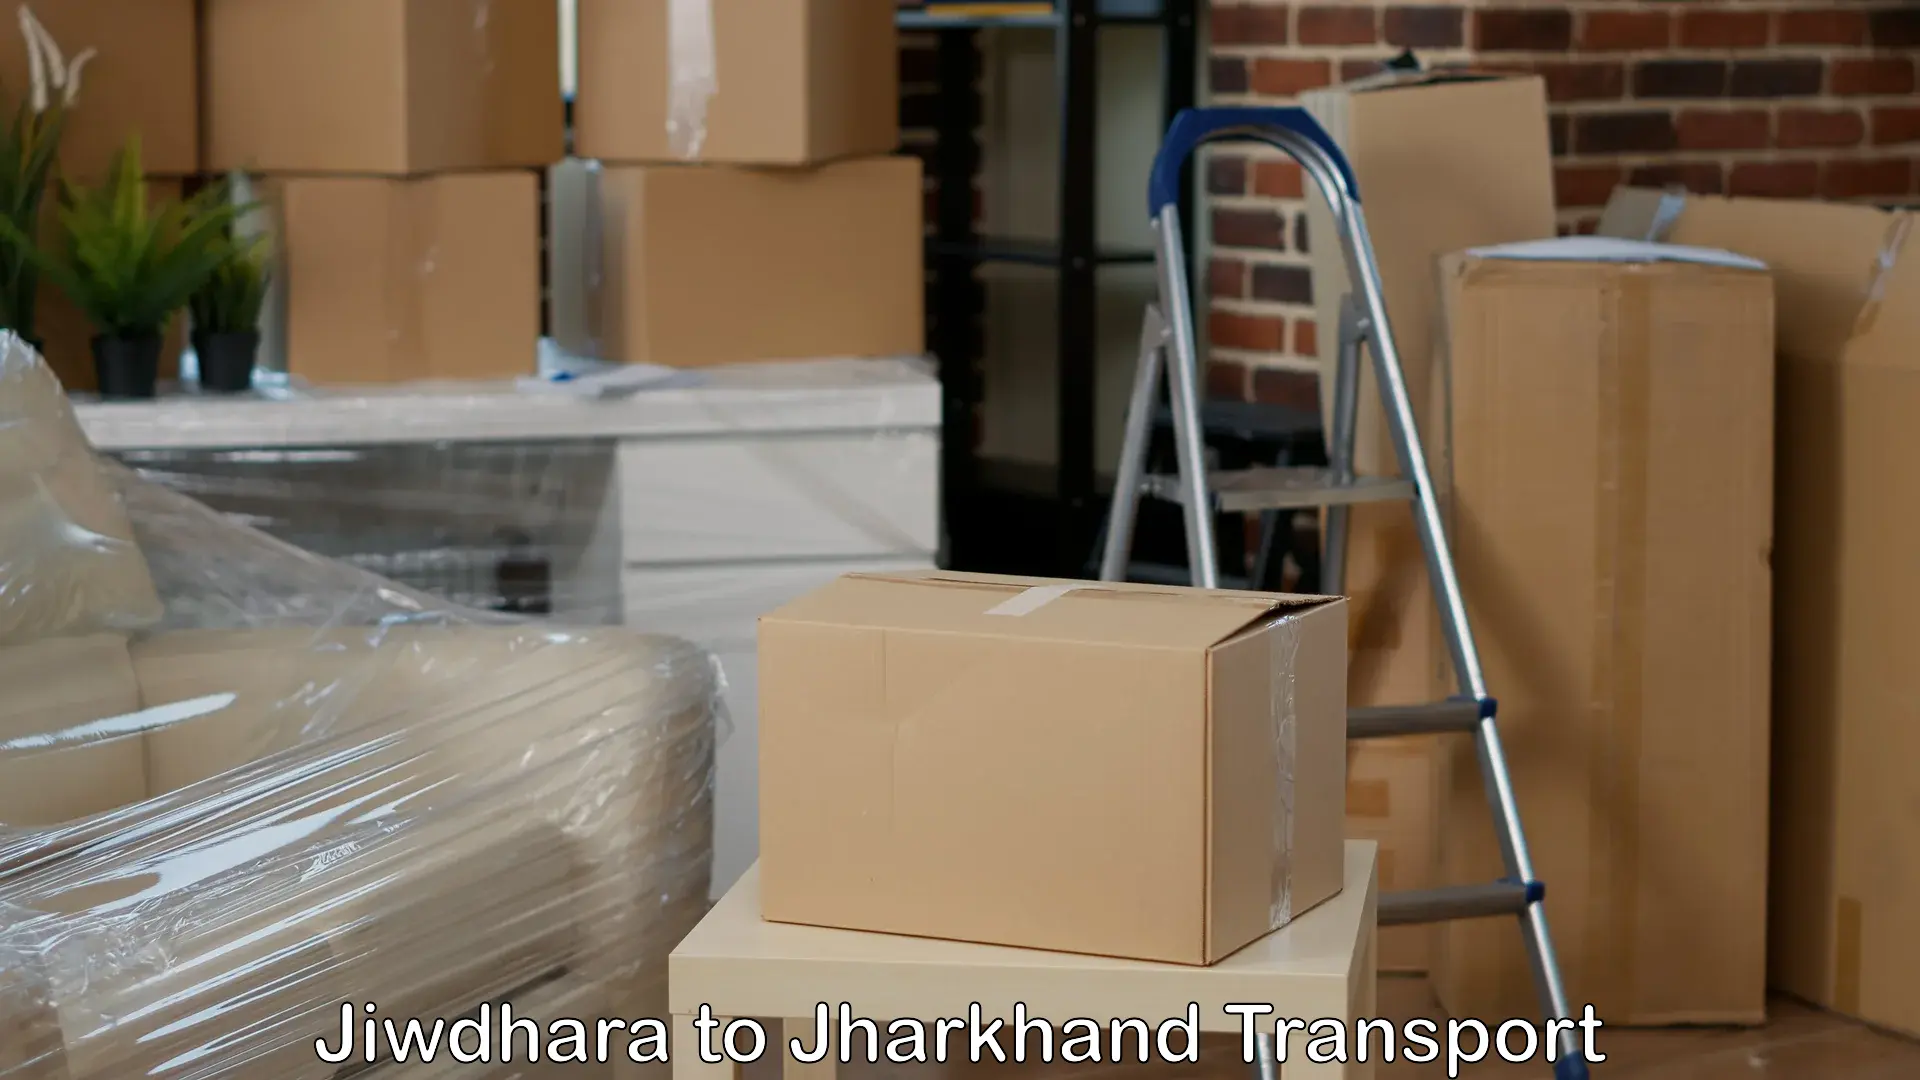 Furniture transport service in Jiwdhara to Barharwa